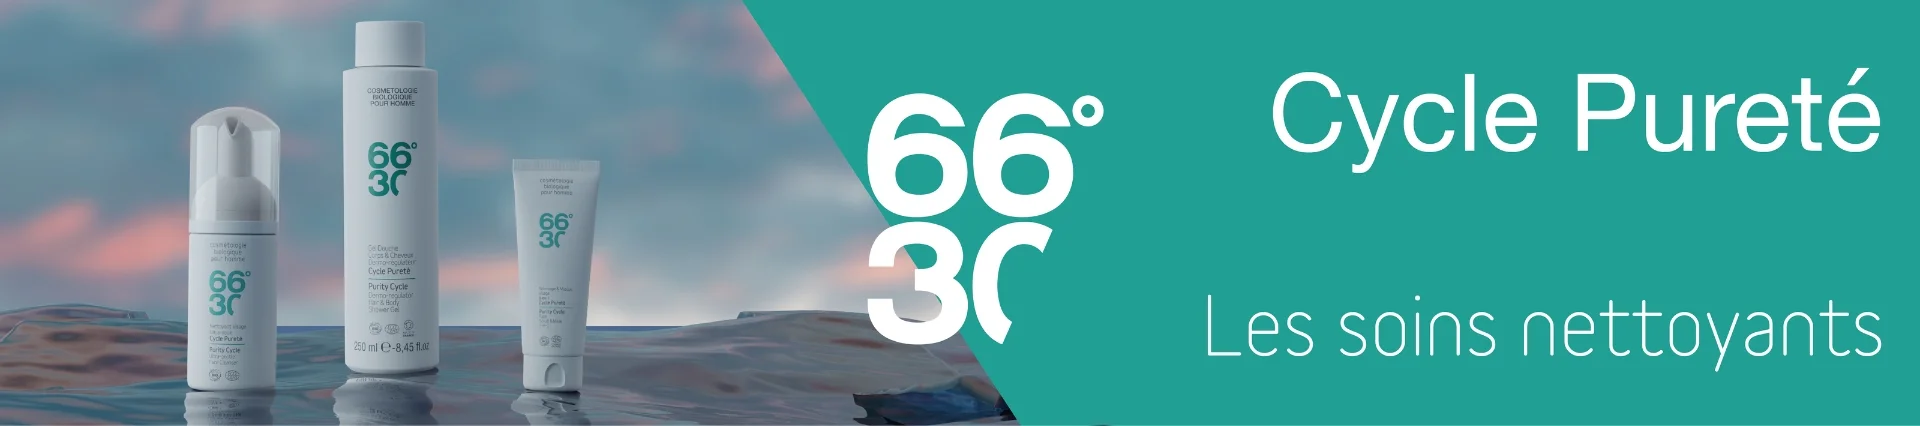 66°30 - Cycle Pureté